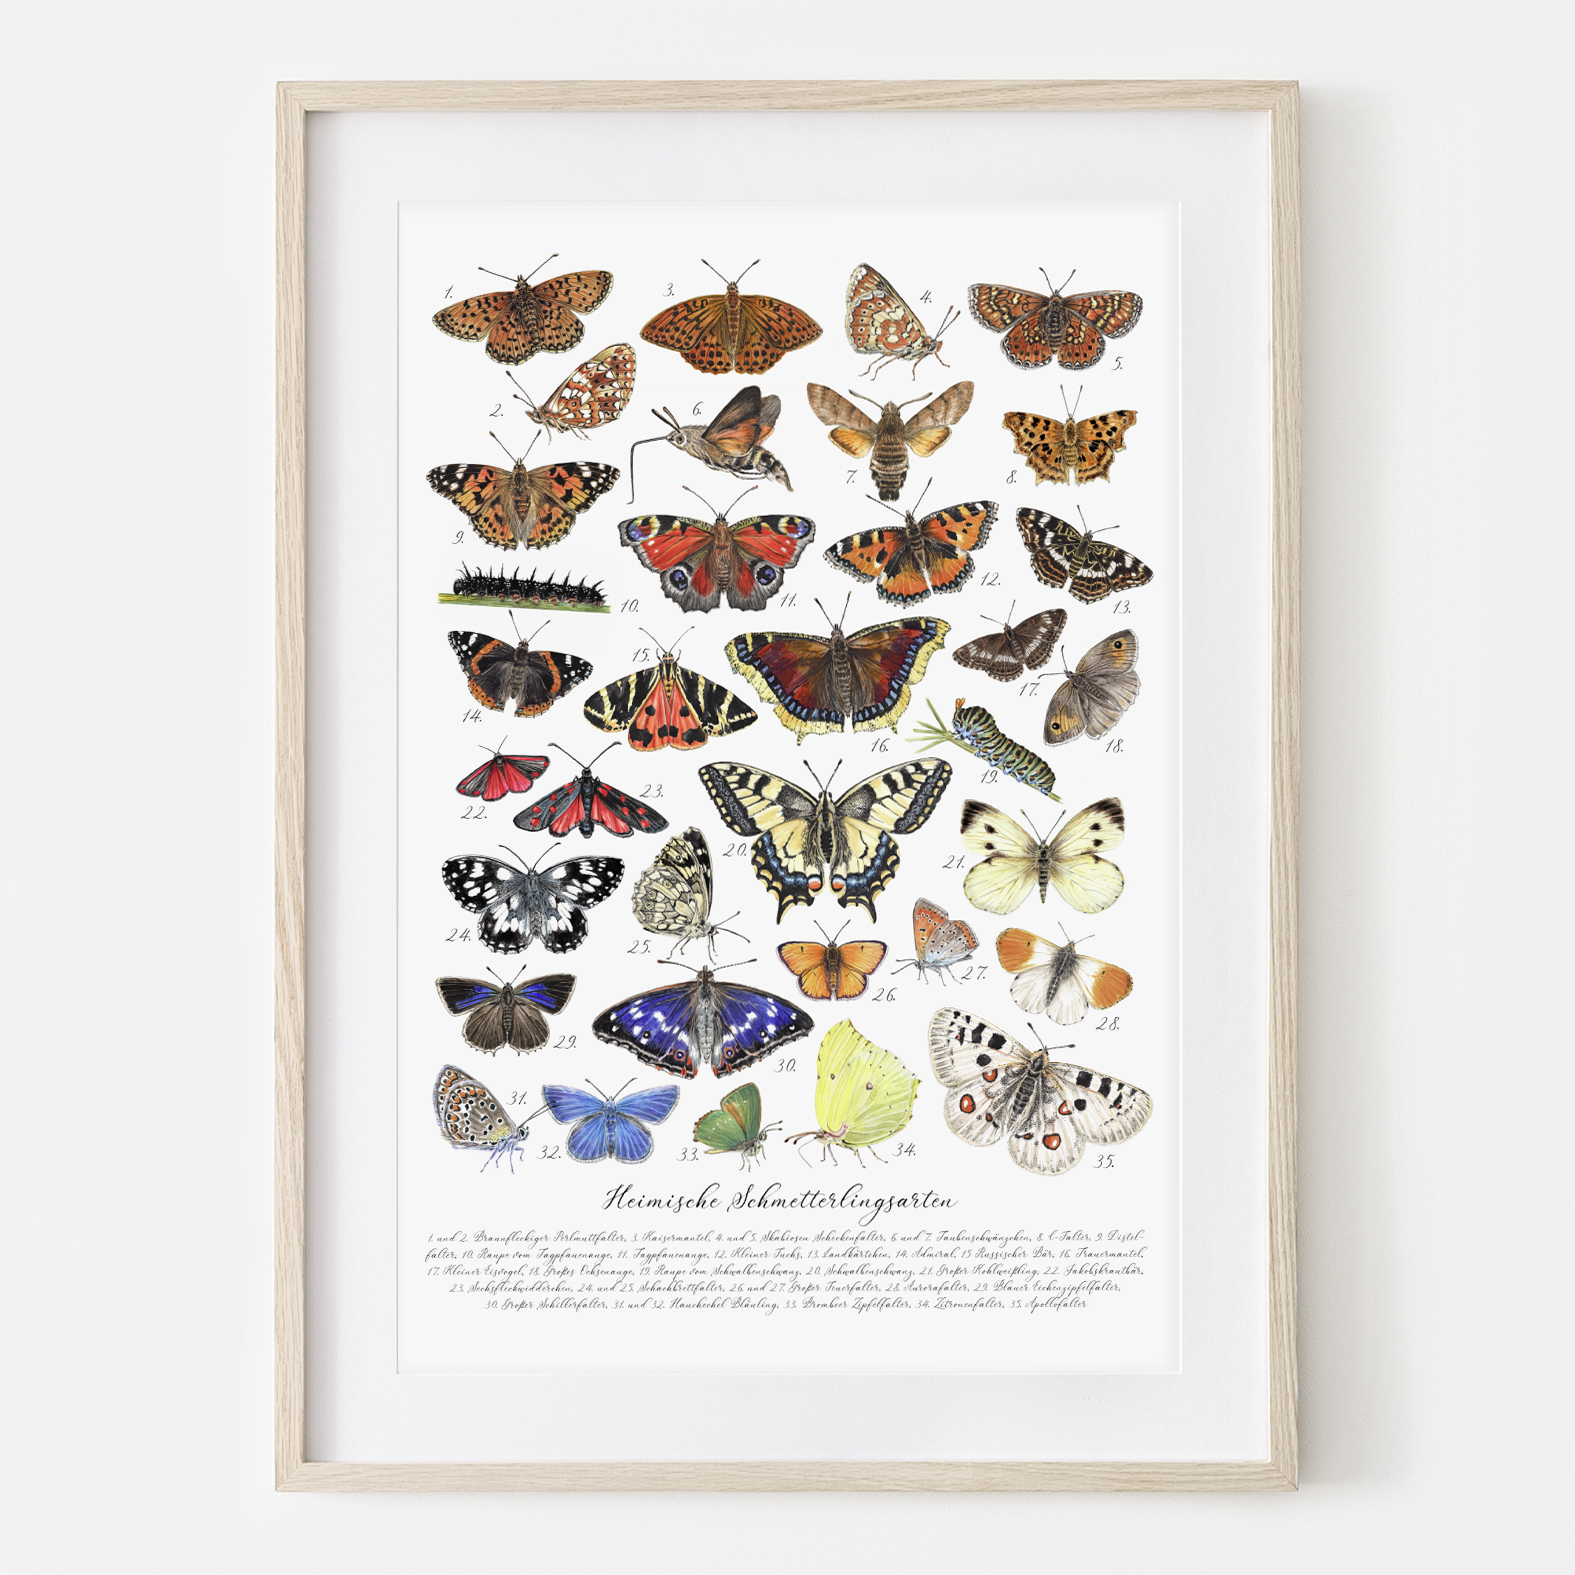 Heimische Schmetterlingsarten, Fine Art Giclée Print, Original in Aquarell, traditionell von Hand